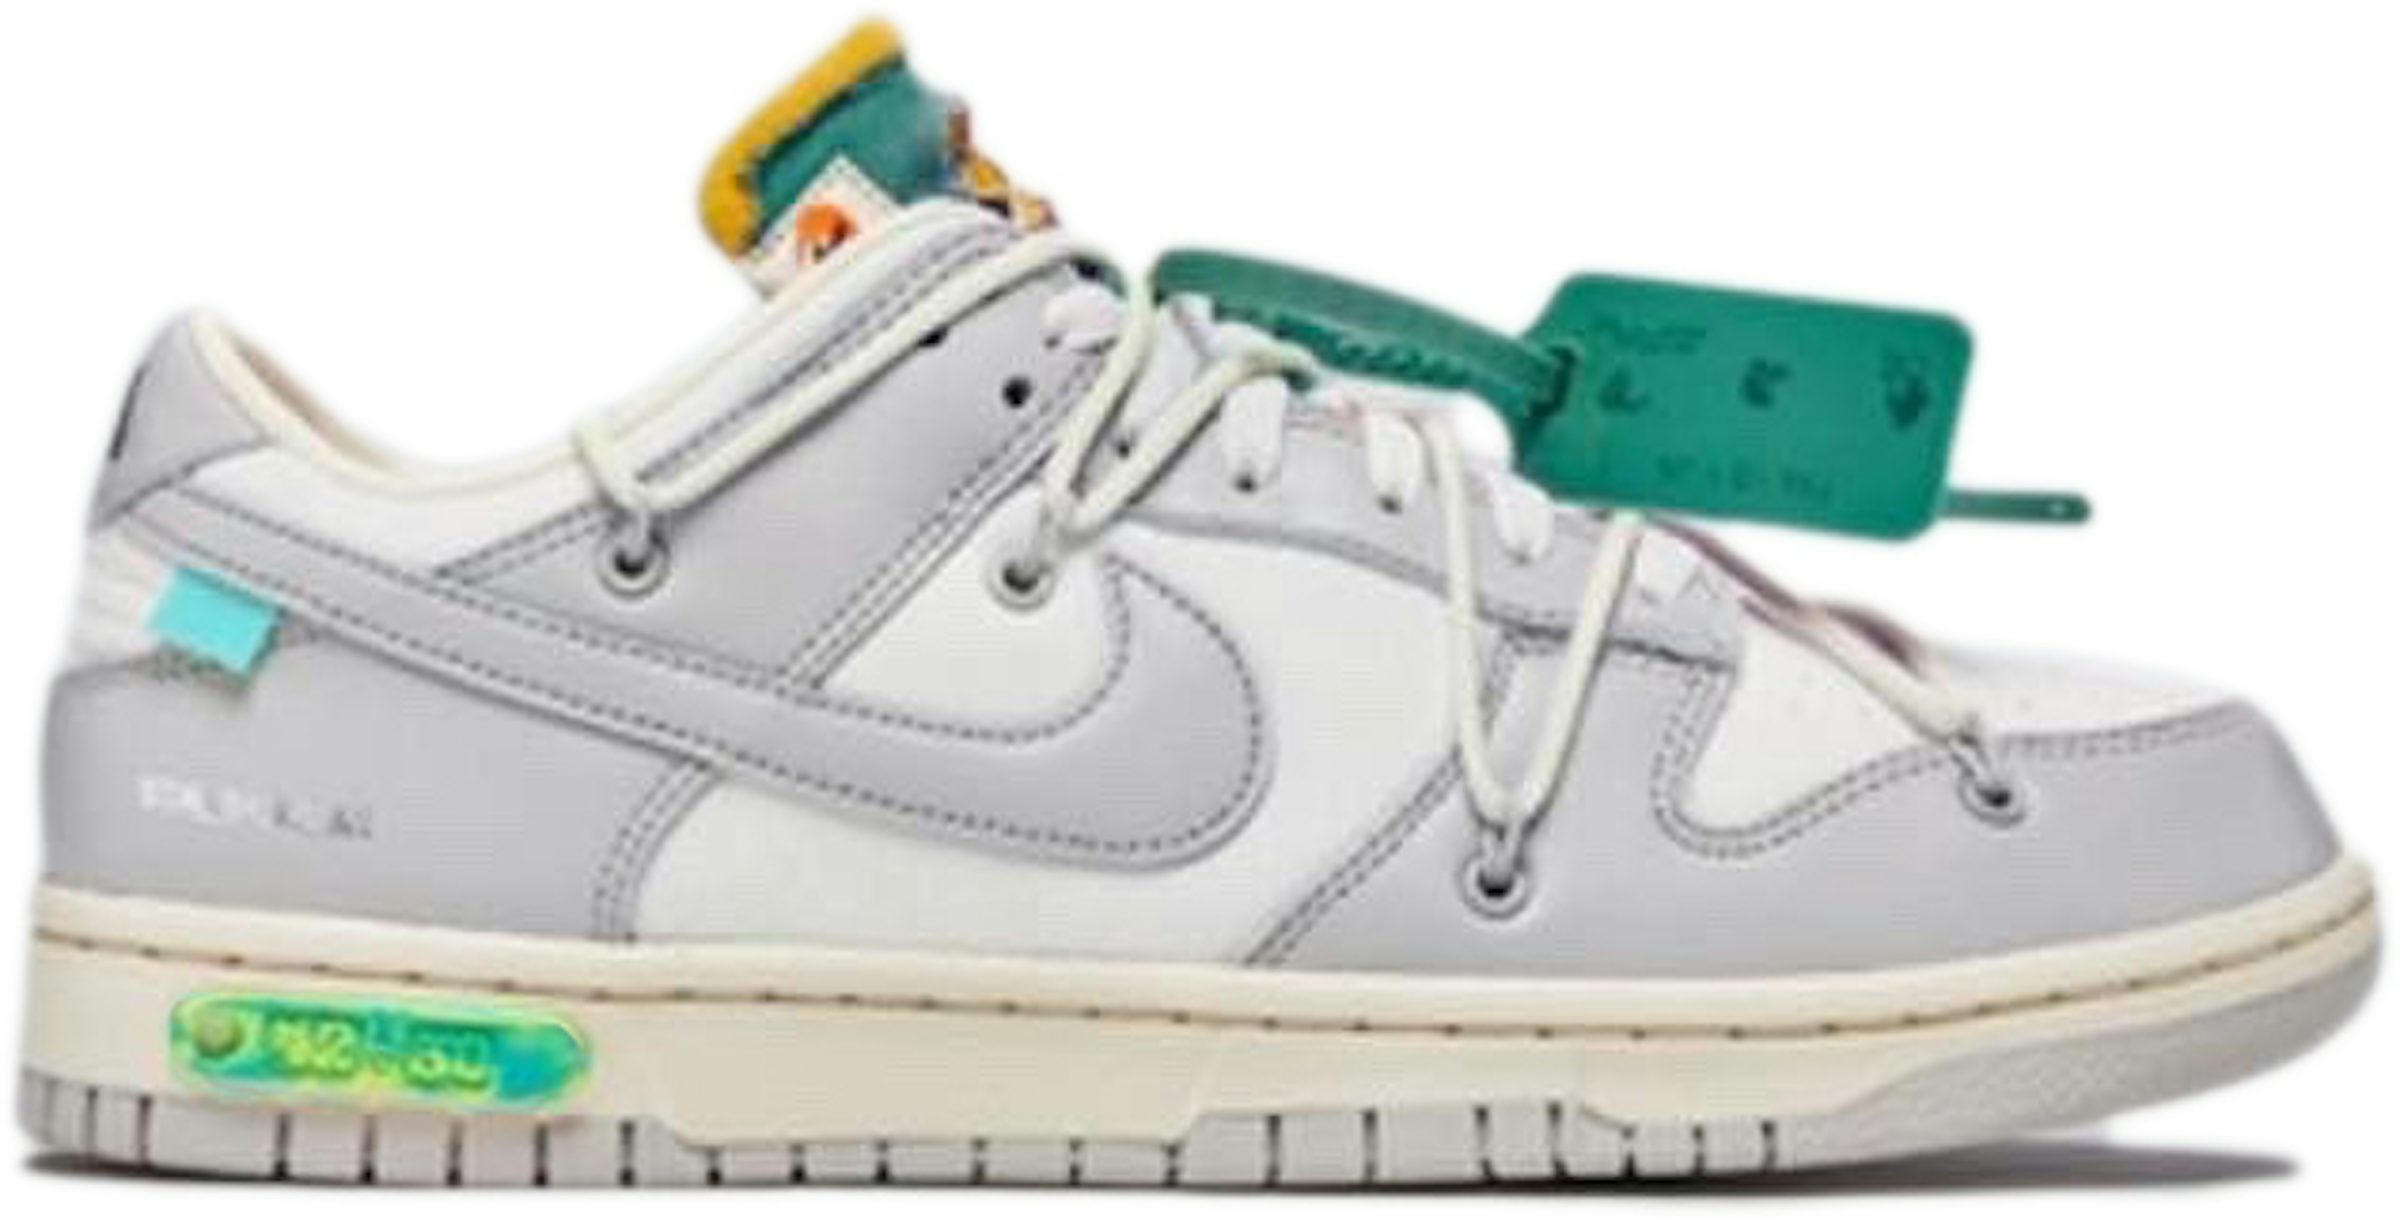 Compra Collections Nike Off-White Calzado y sneakers nuevos - StockX